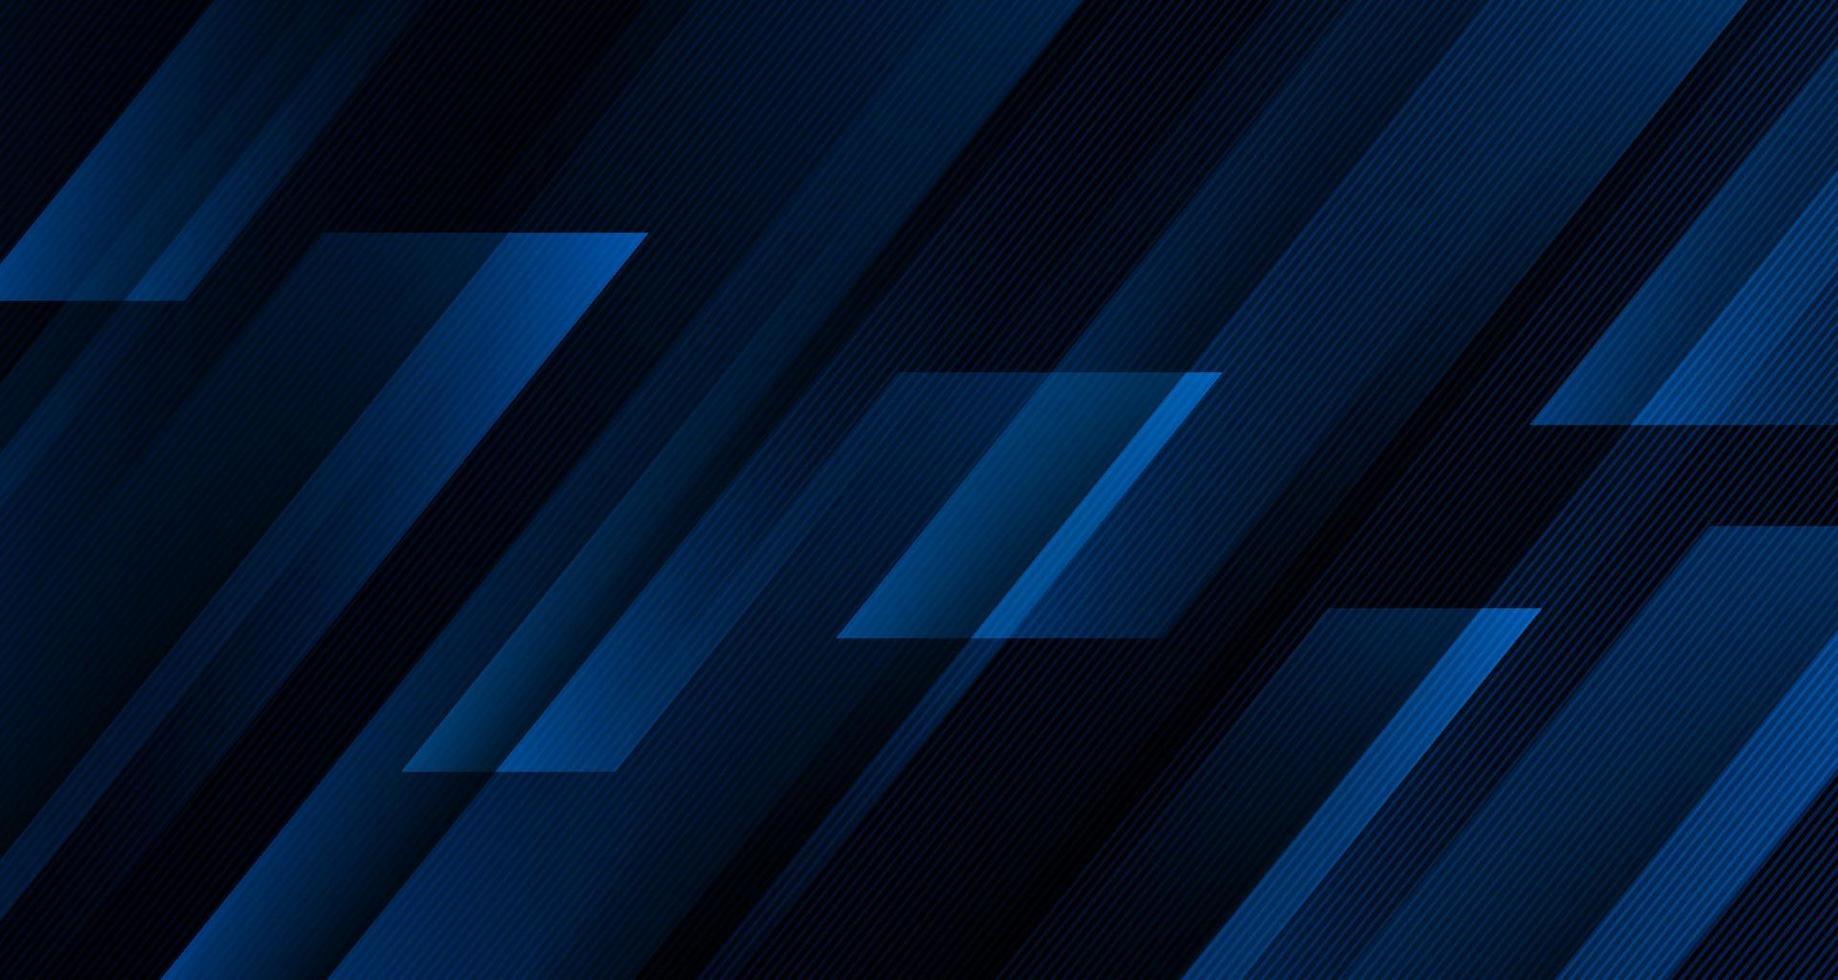 camada de sobreposição de fundo abstrato geométrico azul 3d no espaço escuro com decoração de linhas diagonais. elemento de design gráfico moderno estilo listrado para banner, folheto, cartão, capa de brochura ou página de destino vetor